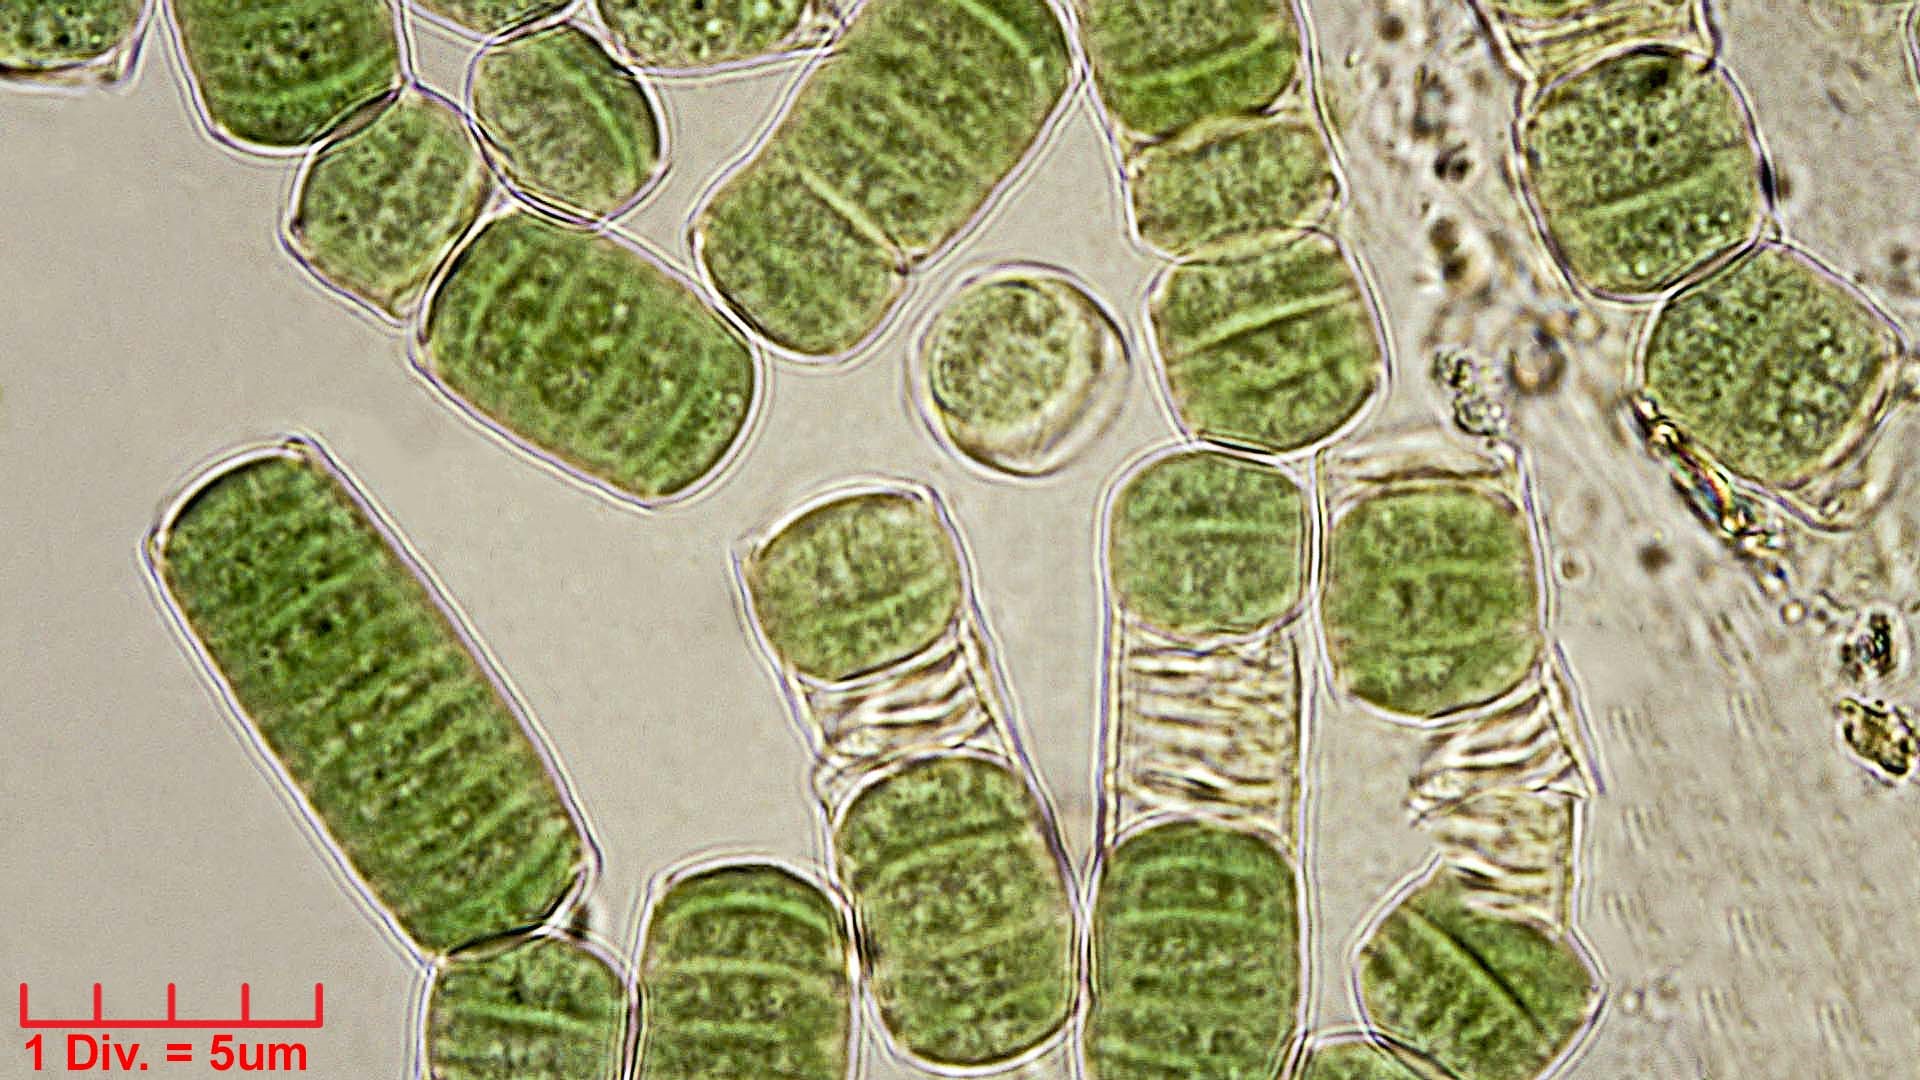 ././././Cyanobacteria/Oscillatoriales/Oscillatoriaceae/Oscillatoria/curviceps/oscillatoria-curviceps-180.jpg